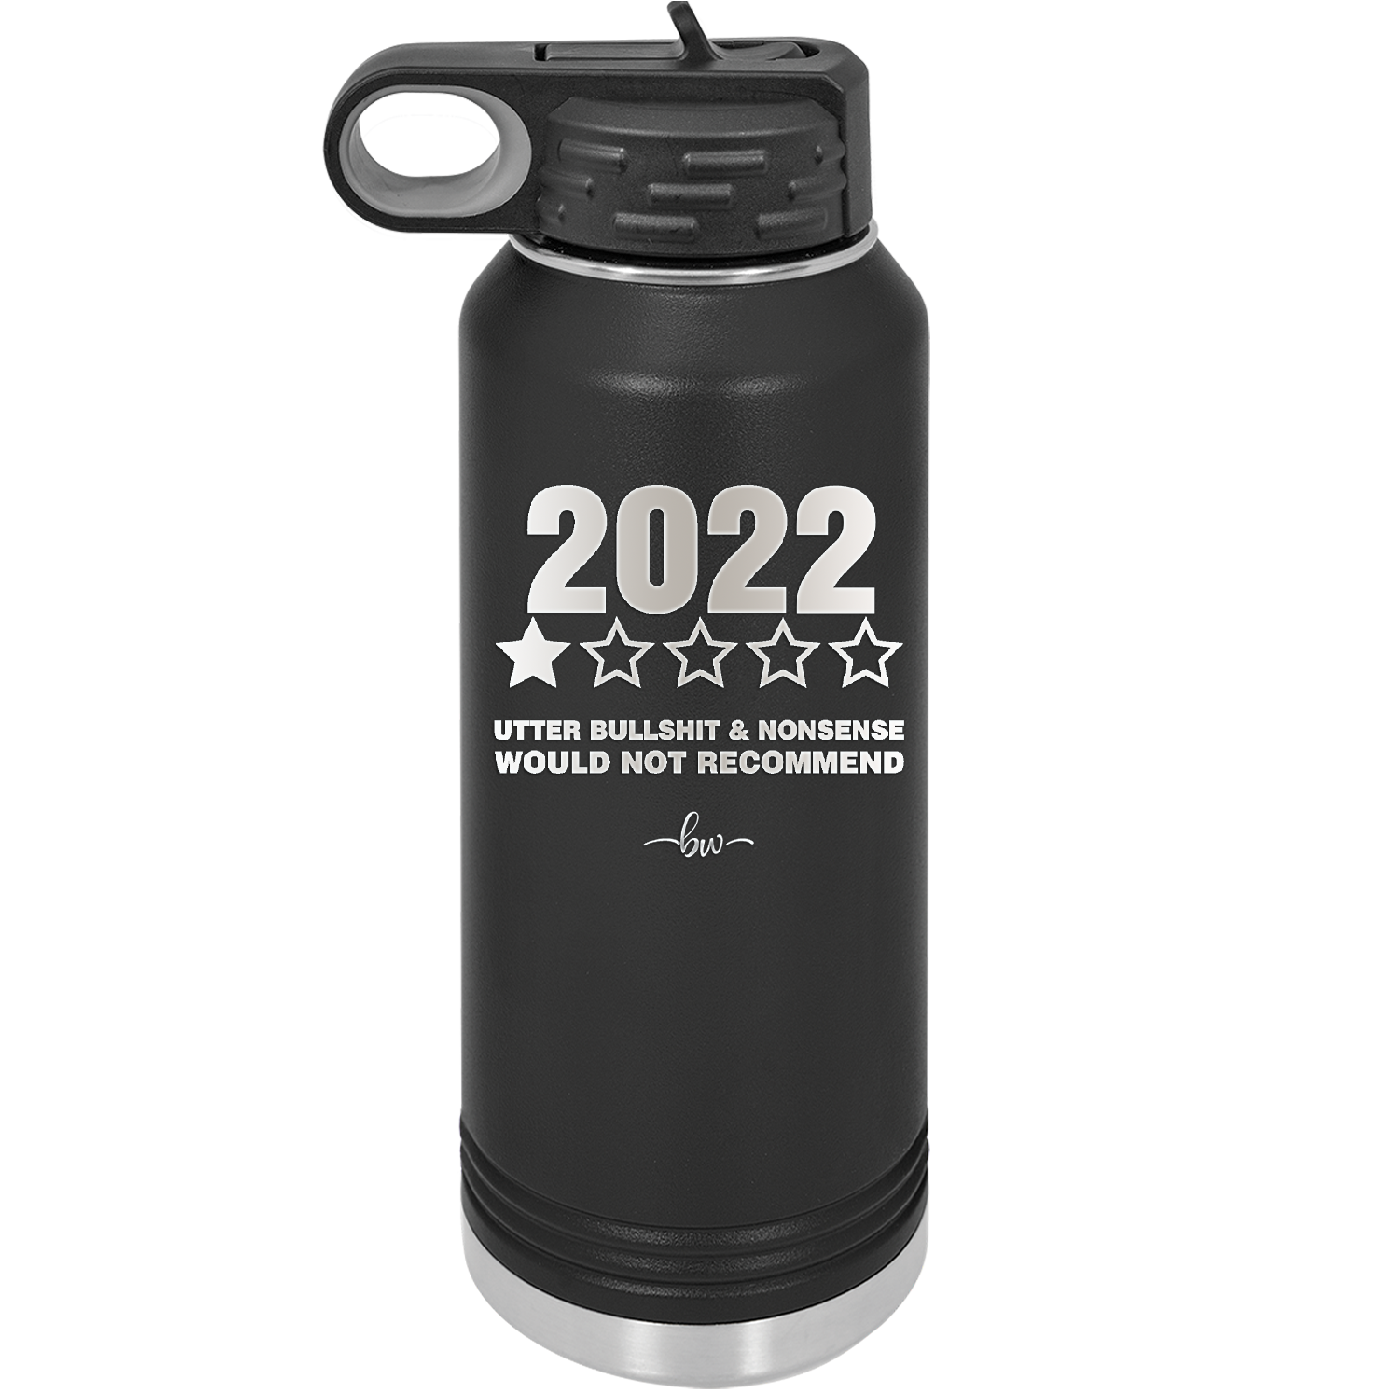 32 oz water bottle  2022 utter bullshitt and nonsense would not recommend- black